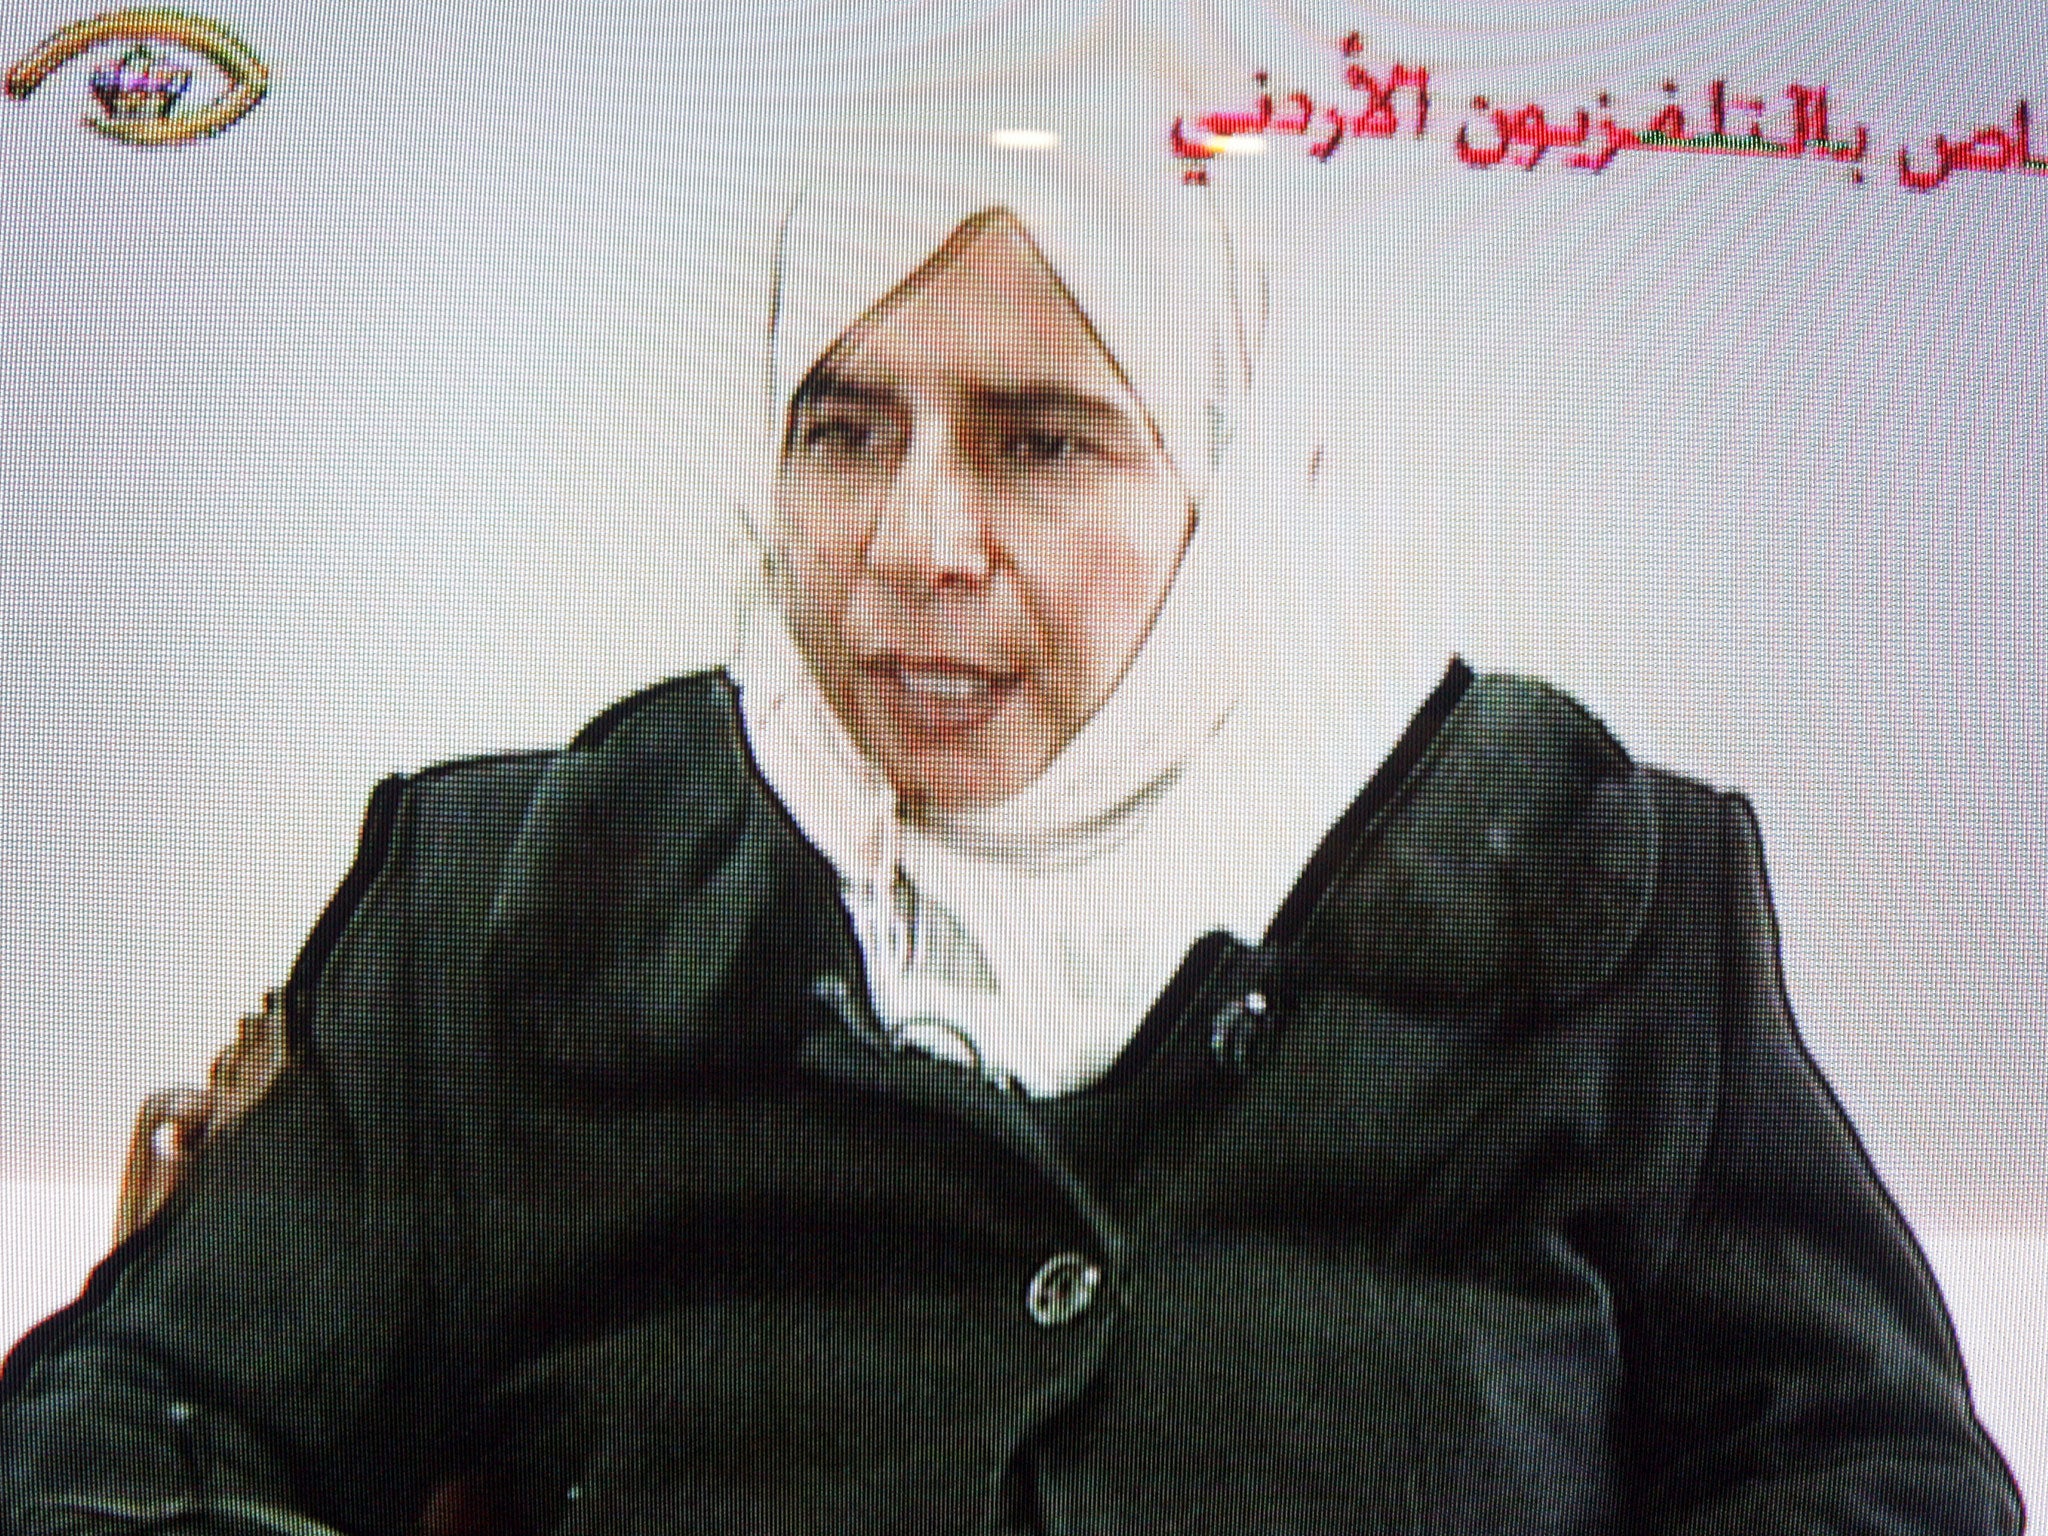 Sajida al-Rishawi on Jordanian television in 2005